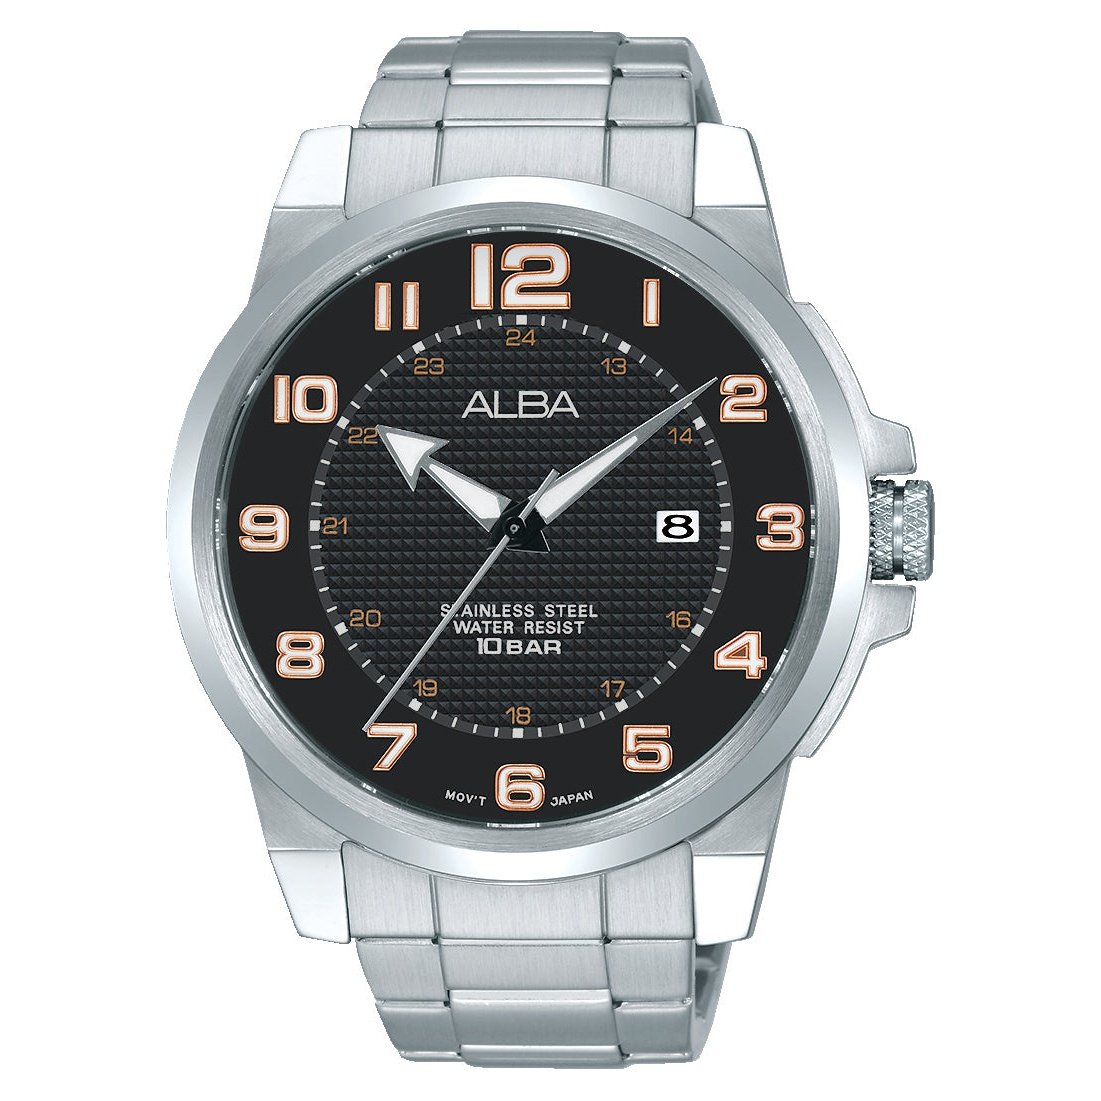 Men's Active Watch AS9C69X1 Alba